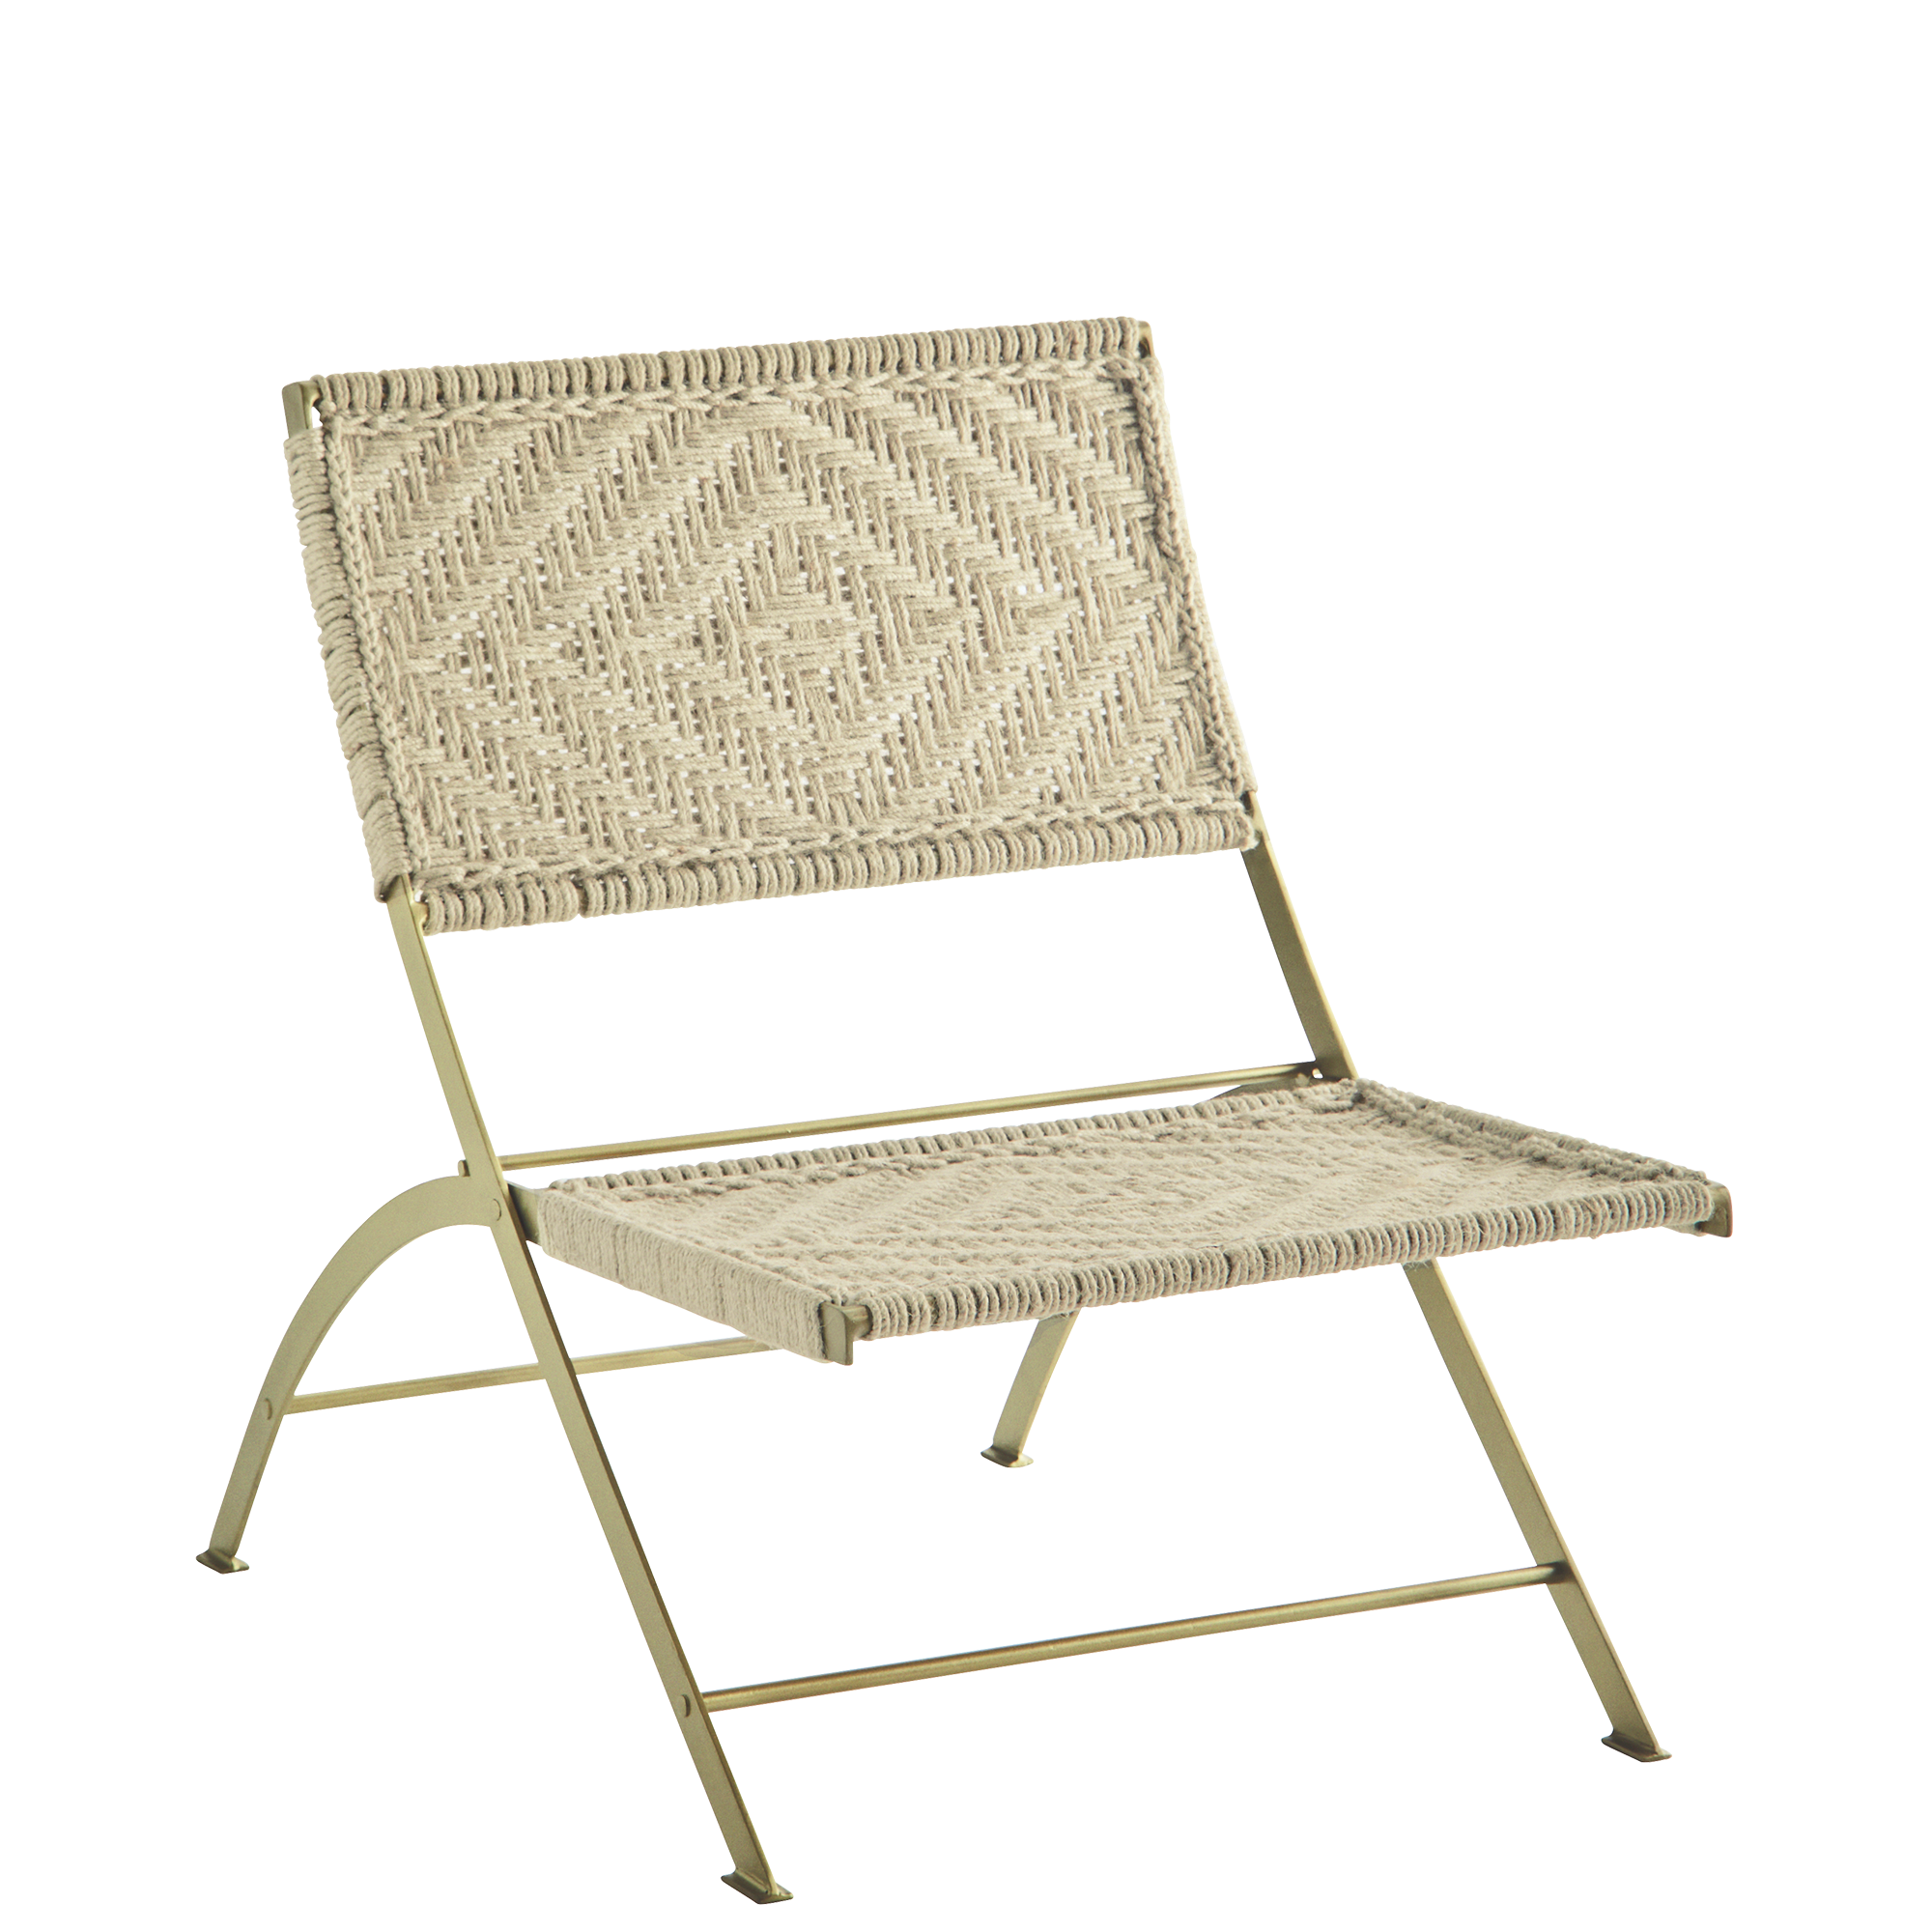 Lounge chair w/ macrame